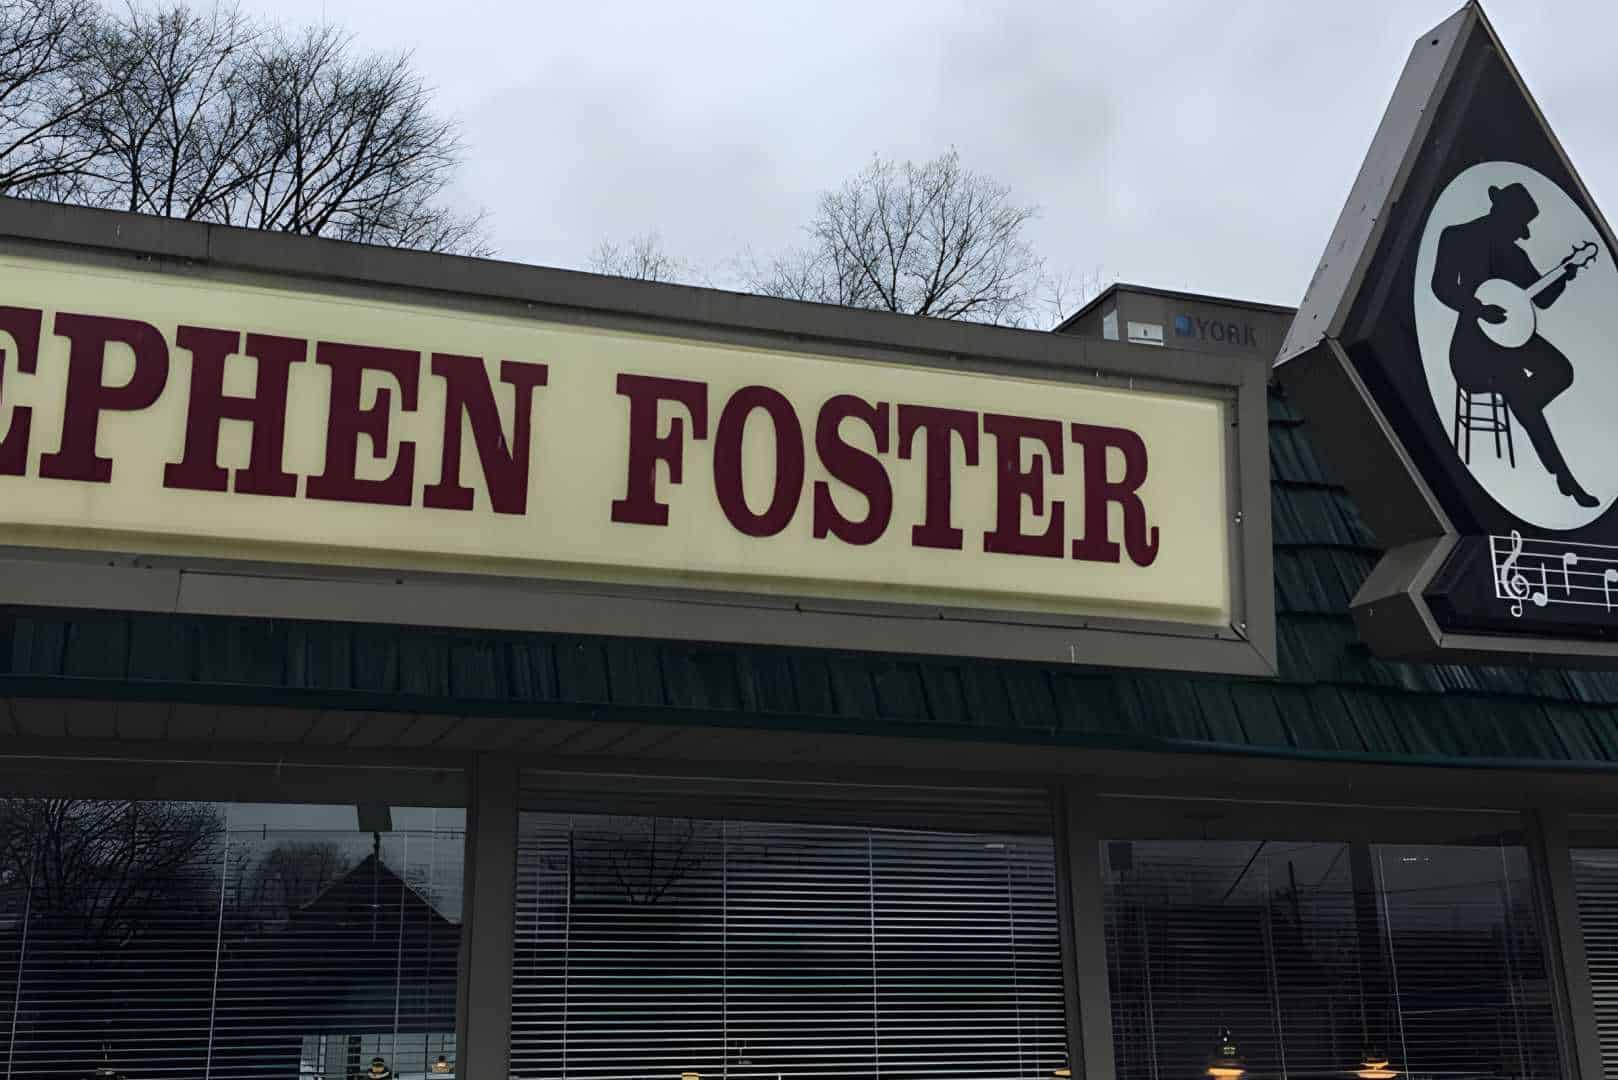 Stephen Foster Restaurant